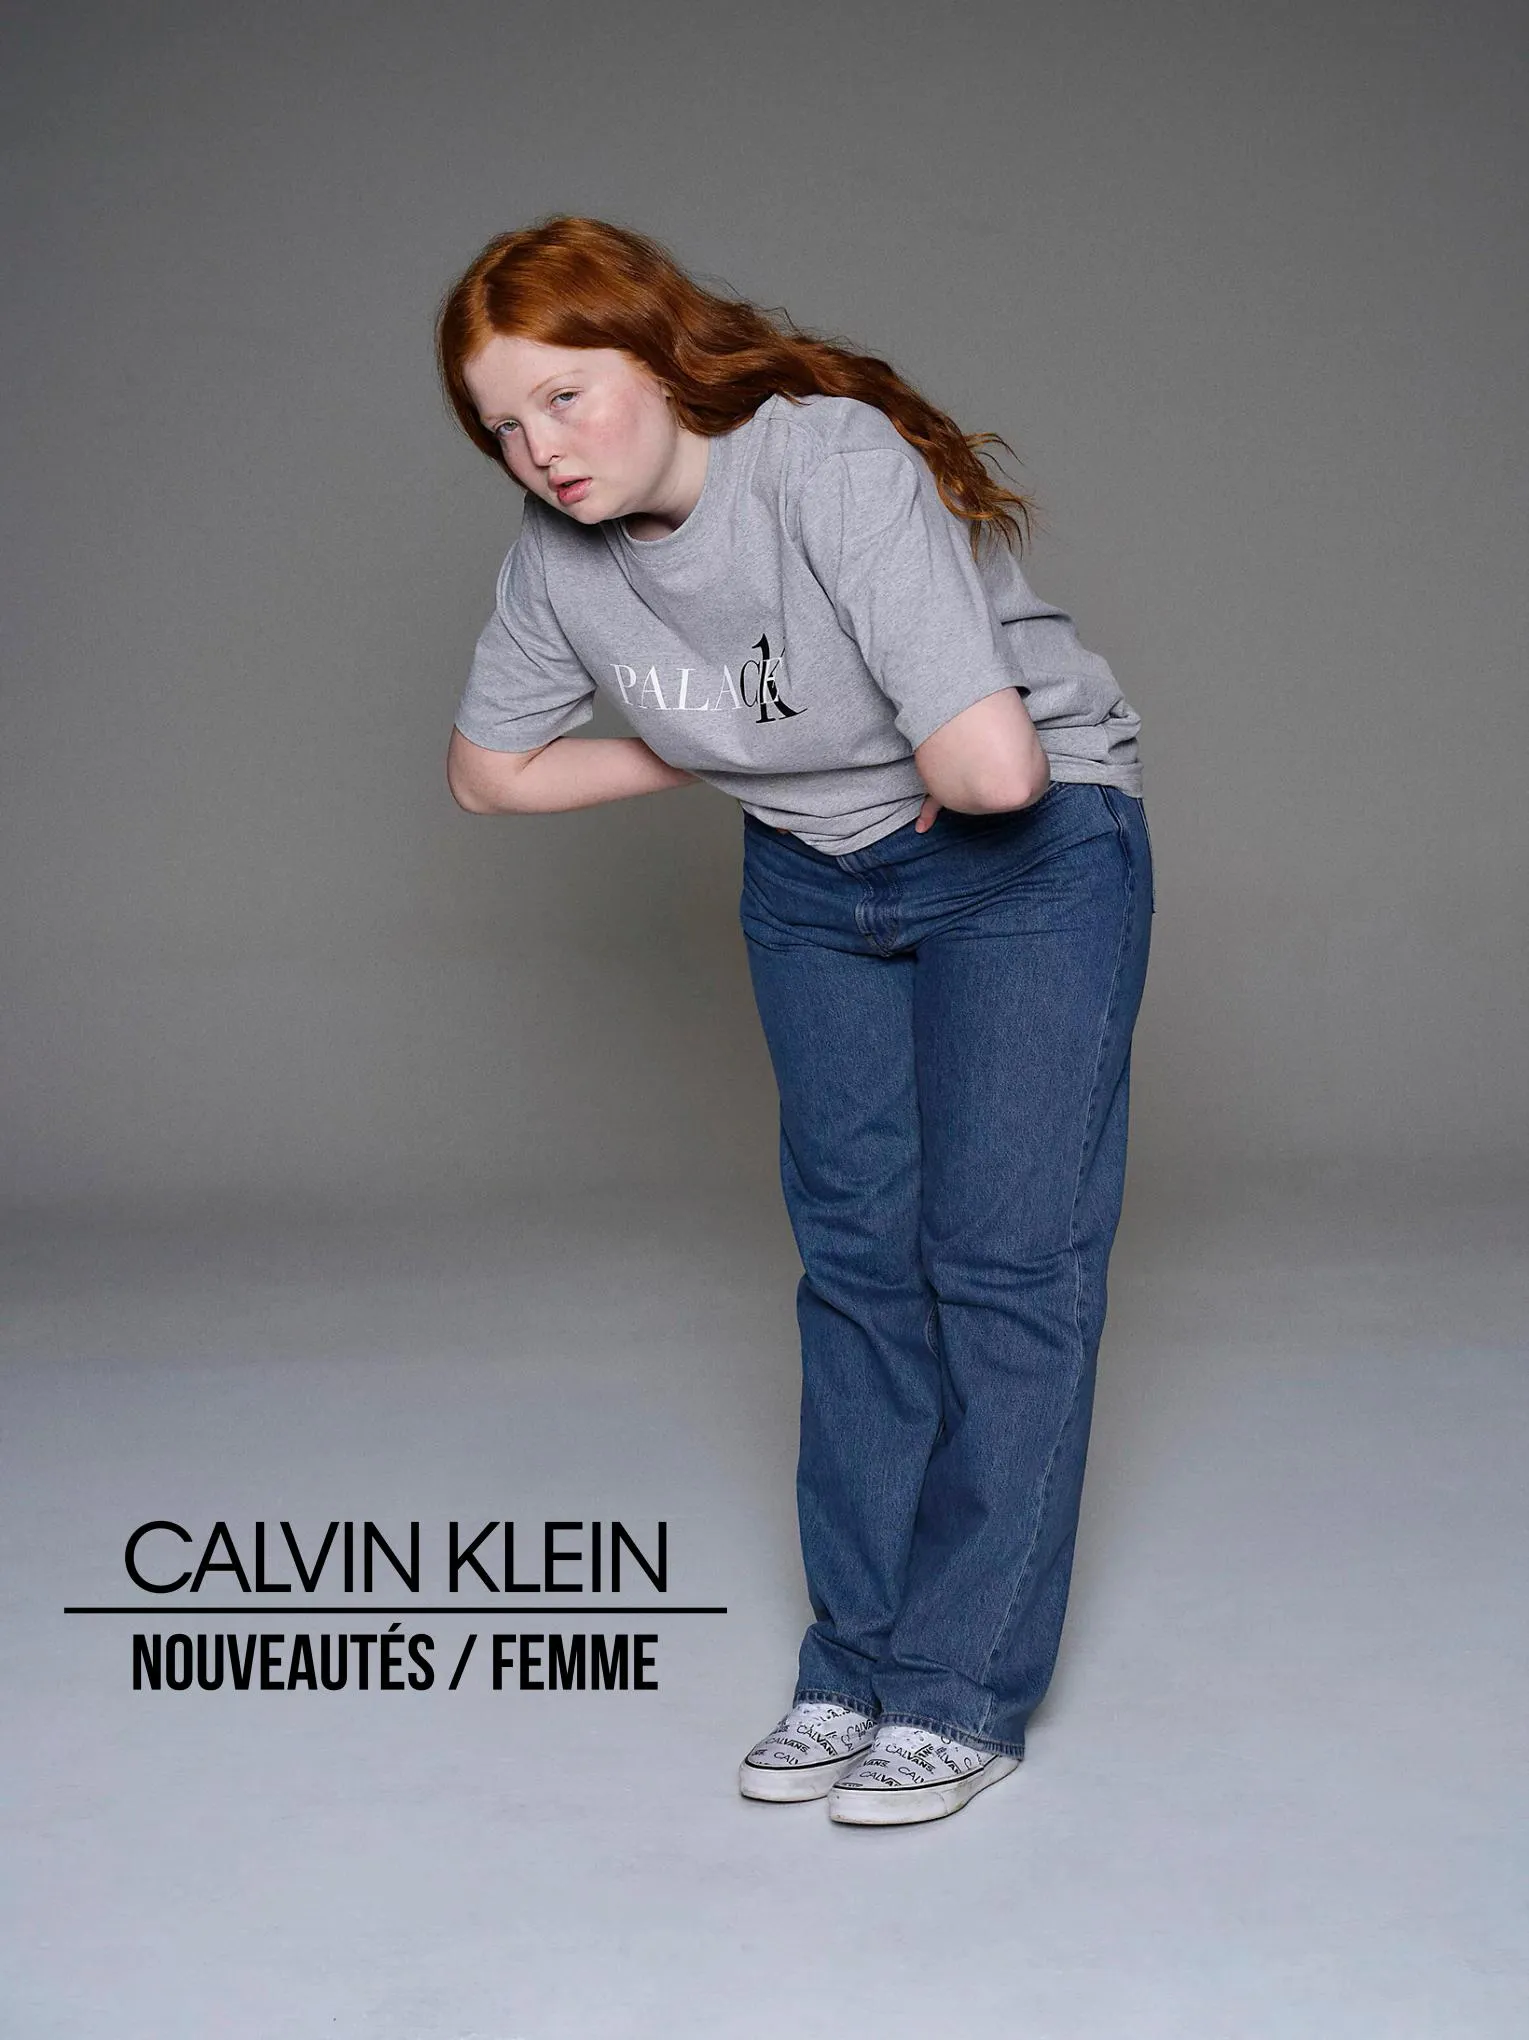 Catalogue Nouveautés / Femme, page 00001